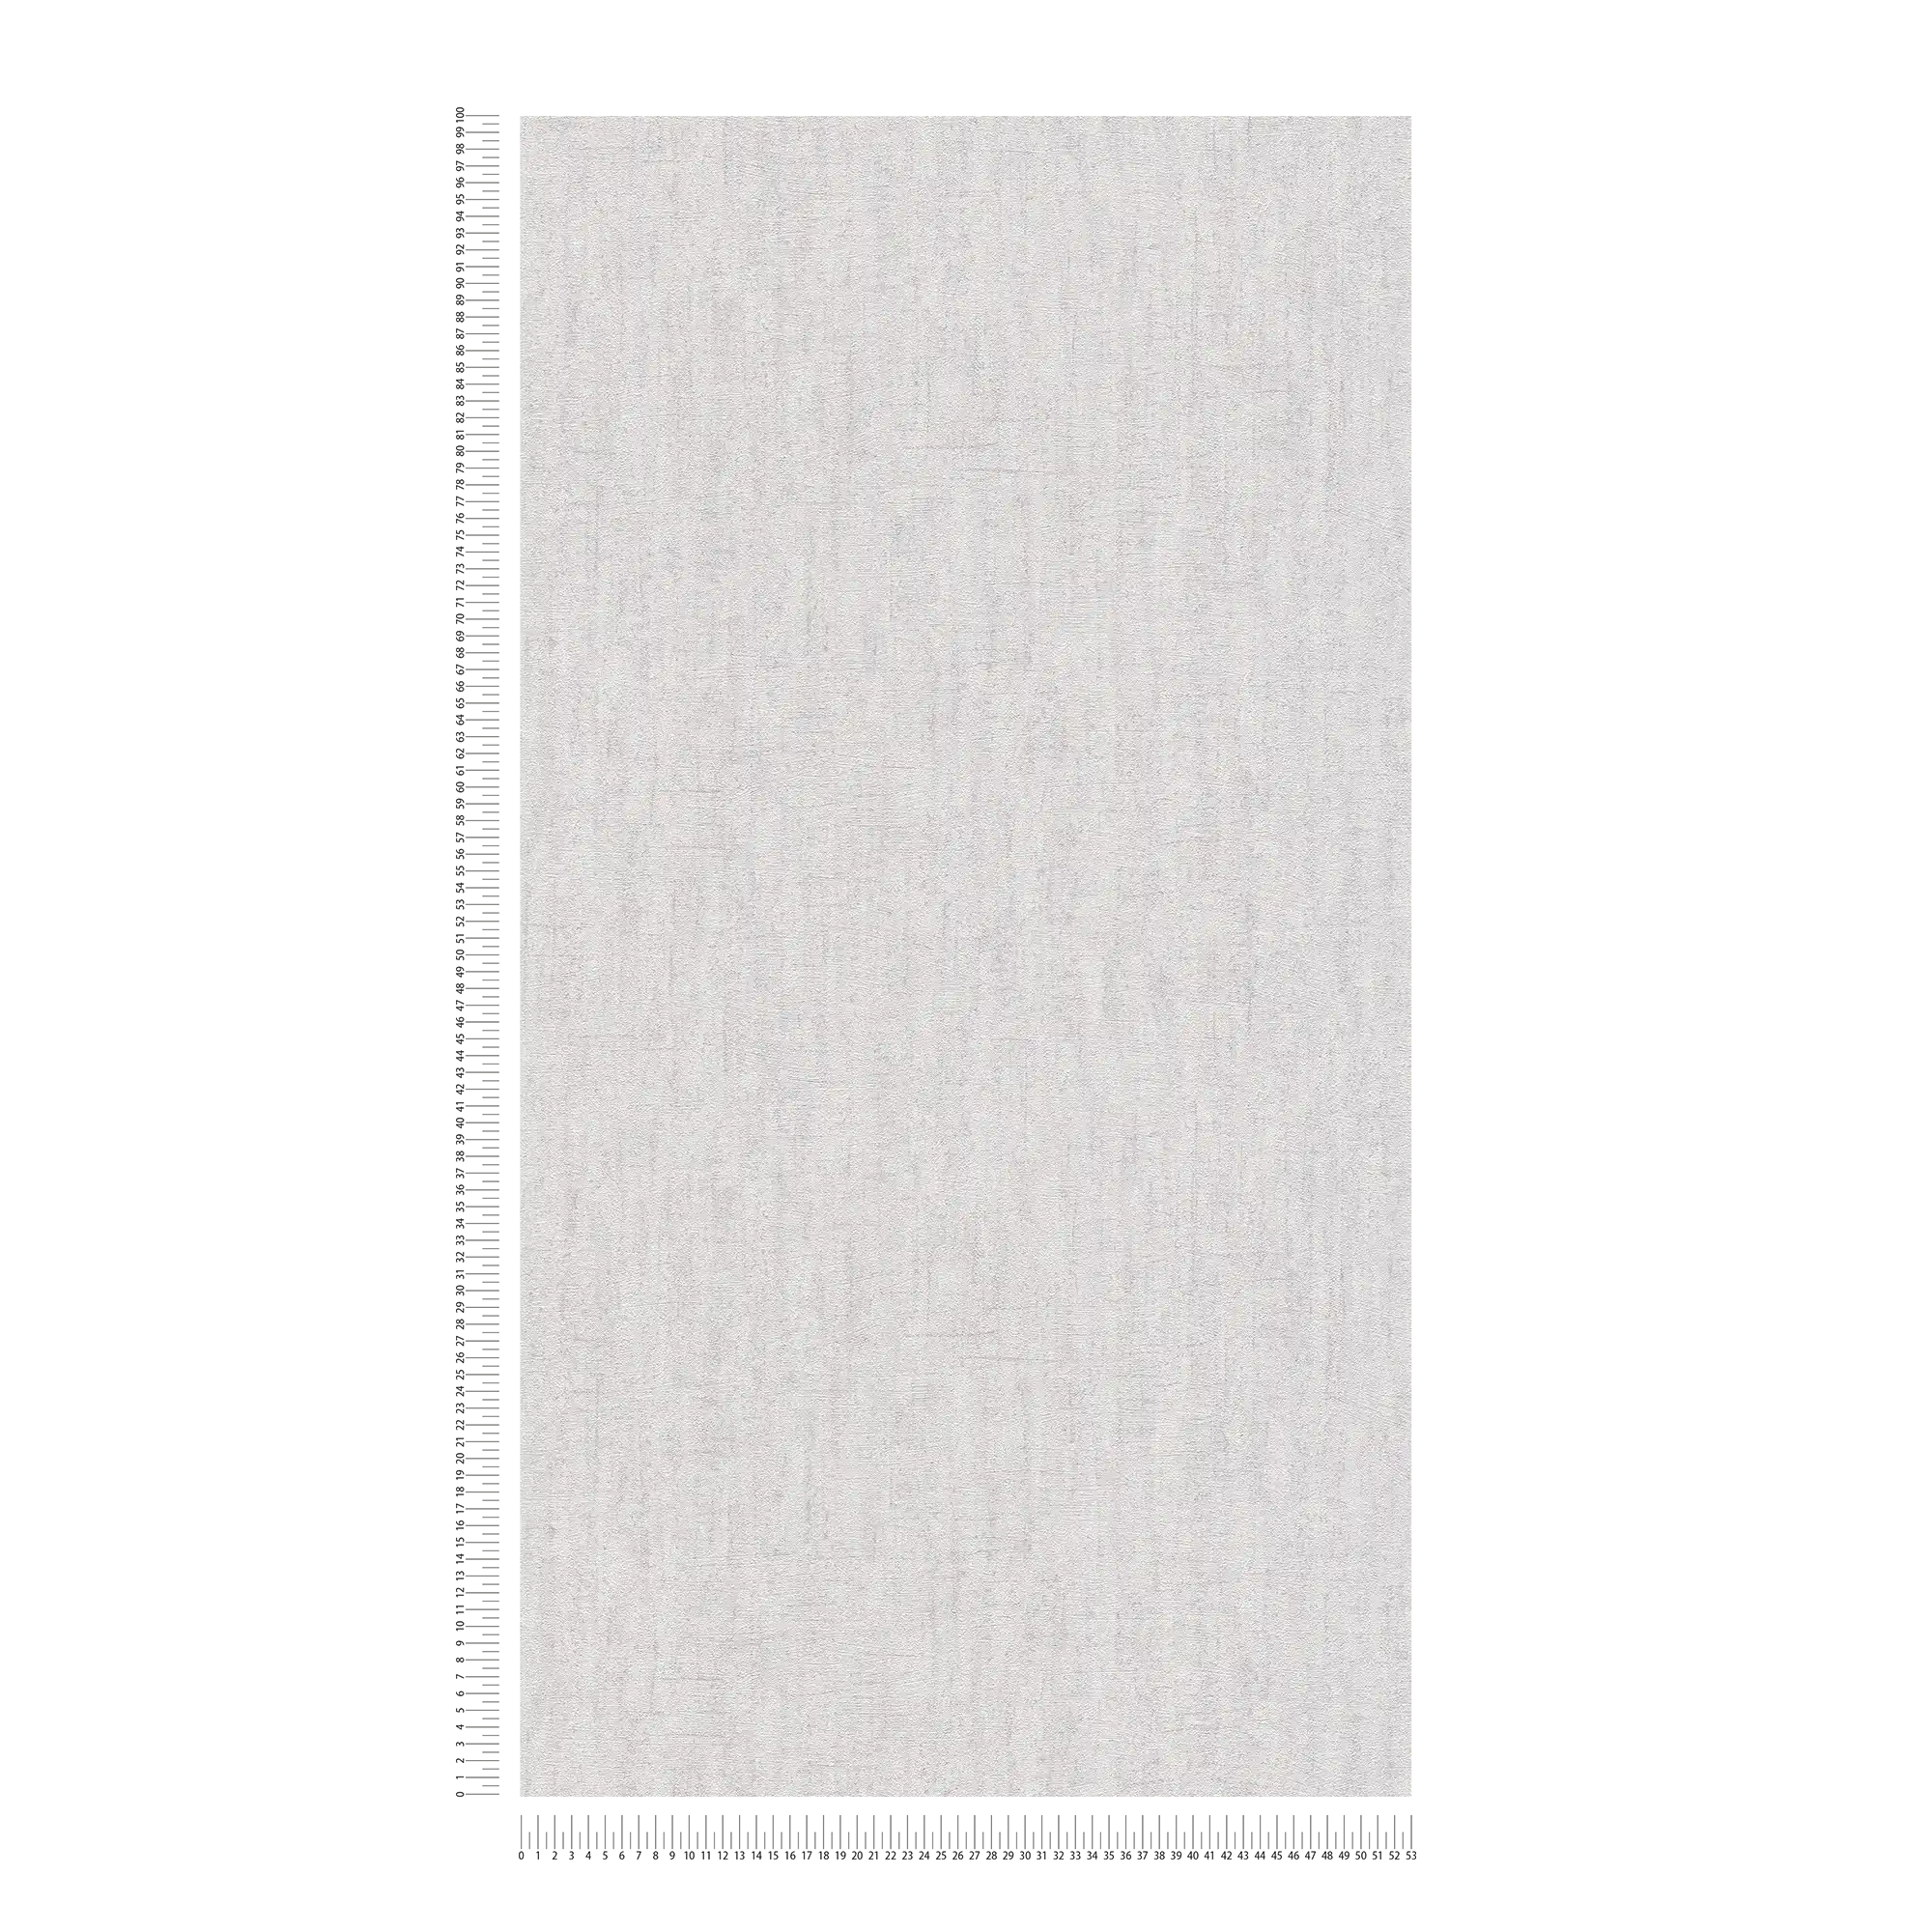             Carta da parati in tessuto non tessuto grigio chiaro lucido con motivo strutturato - Grigio
        